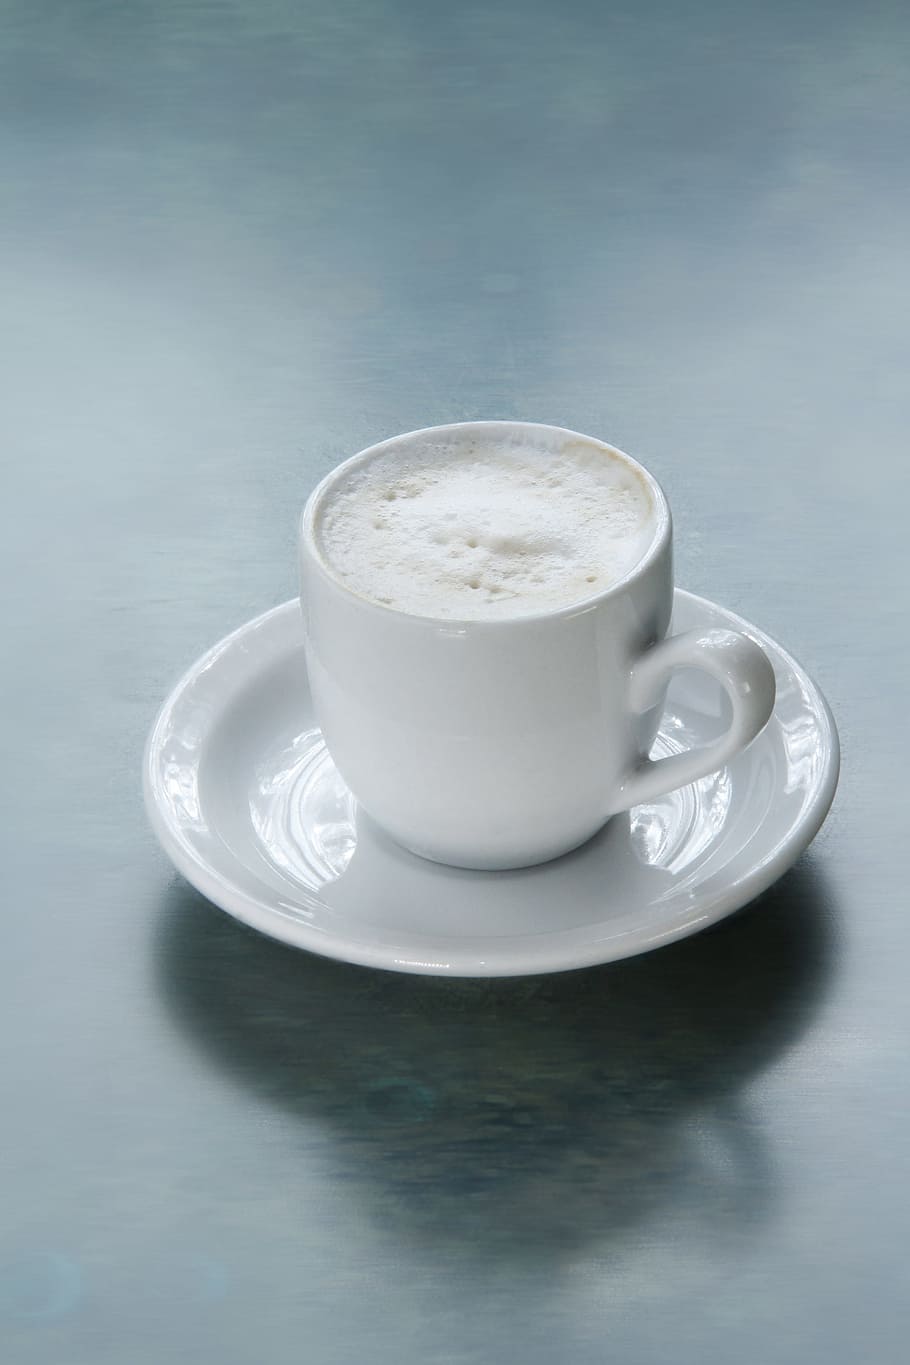 branco, cerâmica, caneca, pires, Cappuccino, com café, xícara de café, marrom café, café, xícara